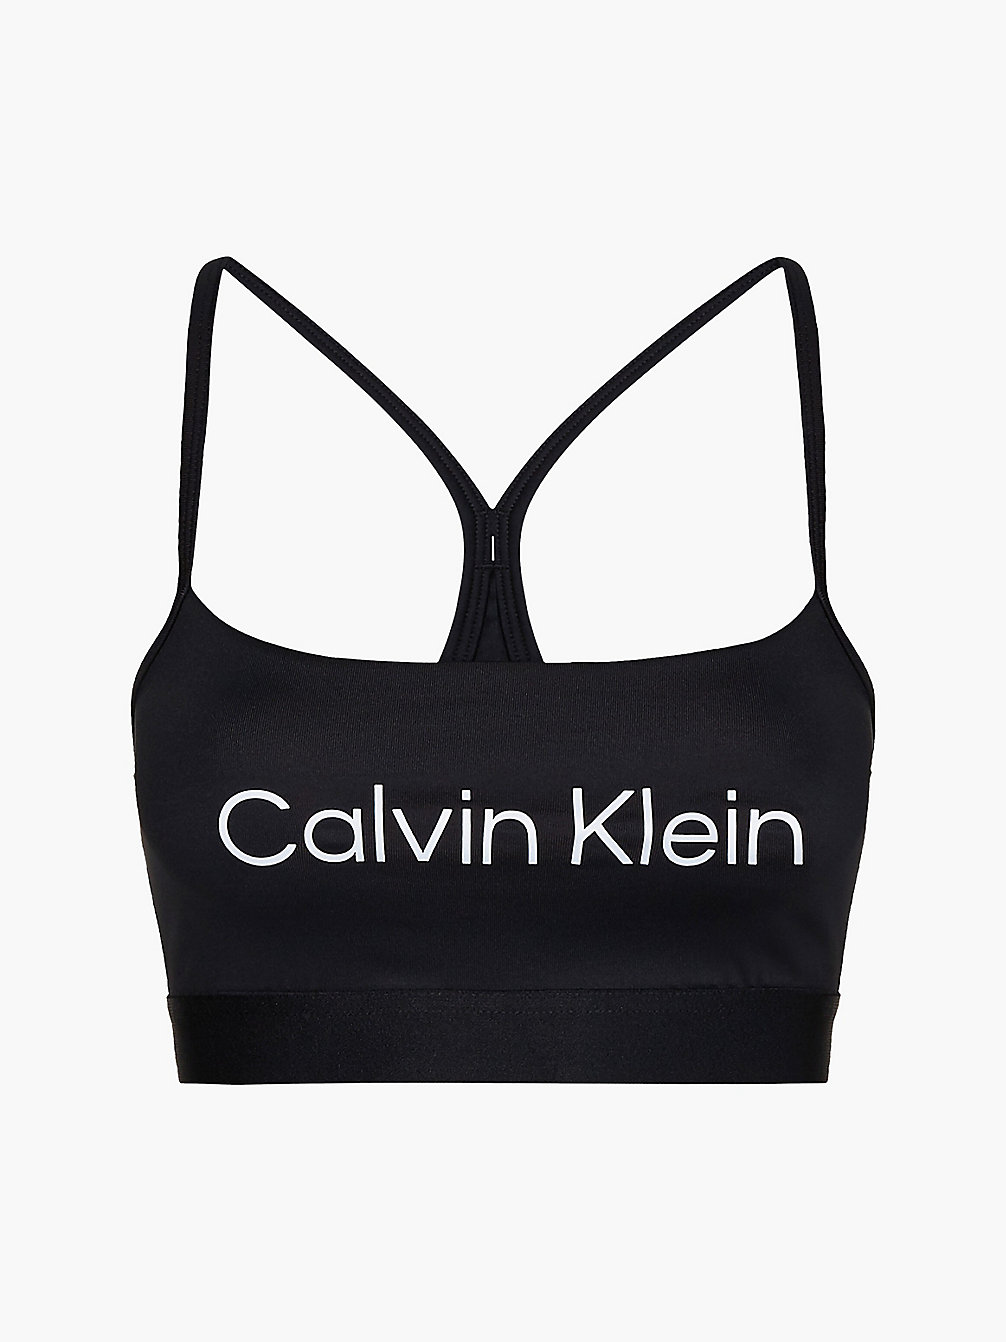 BLACK BEAUTY Soutien-Gorge De Sport Faibles Impacts undefined femmes Calvin Klein